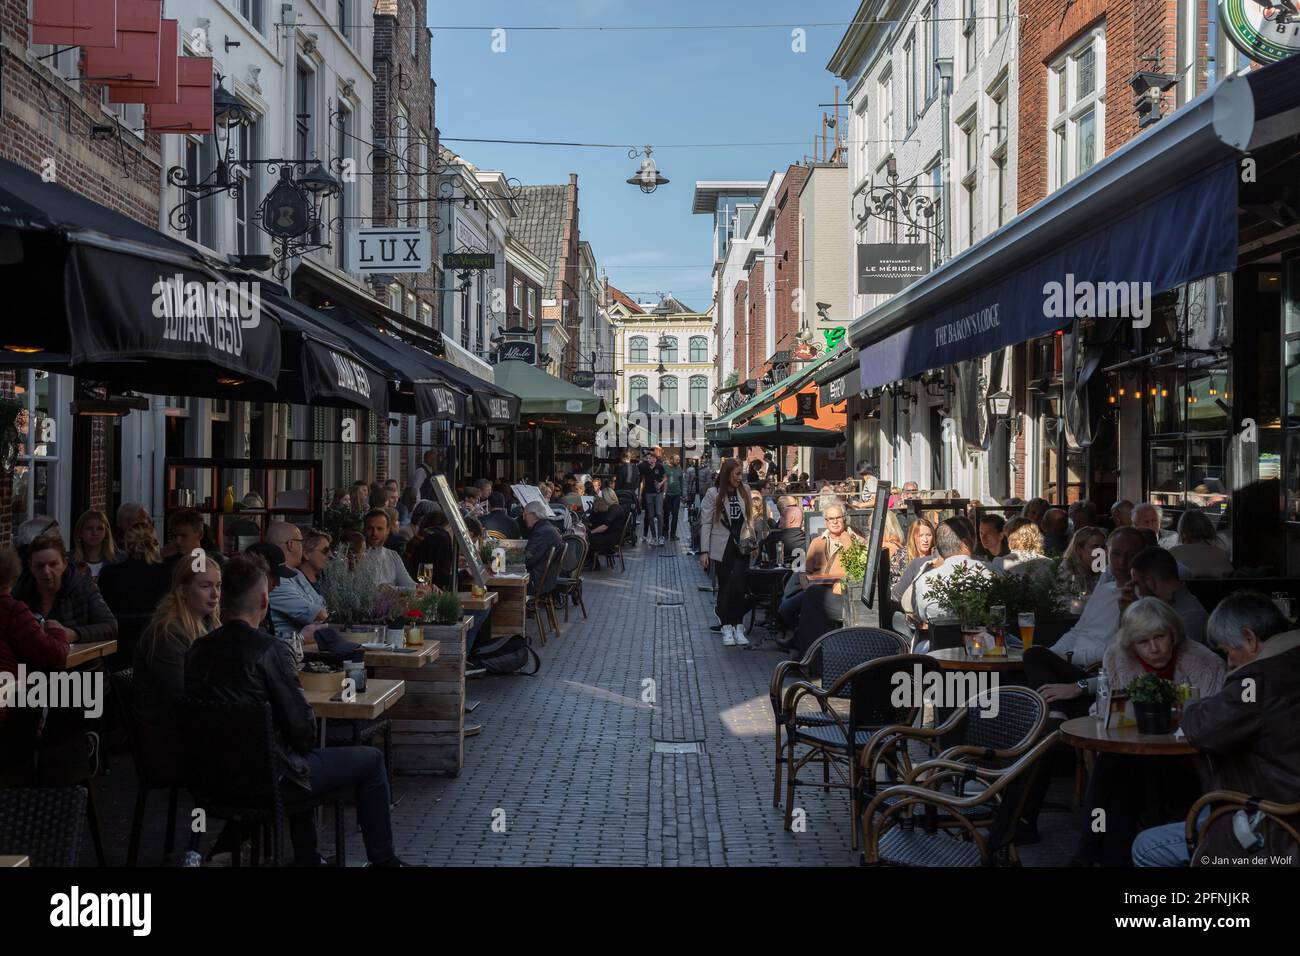 Le persone si godono un drink e uno spuntino sulle terrazze di una strada stretta nel centro di Den Bosch. Foto Stock